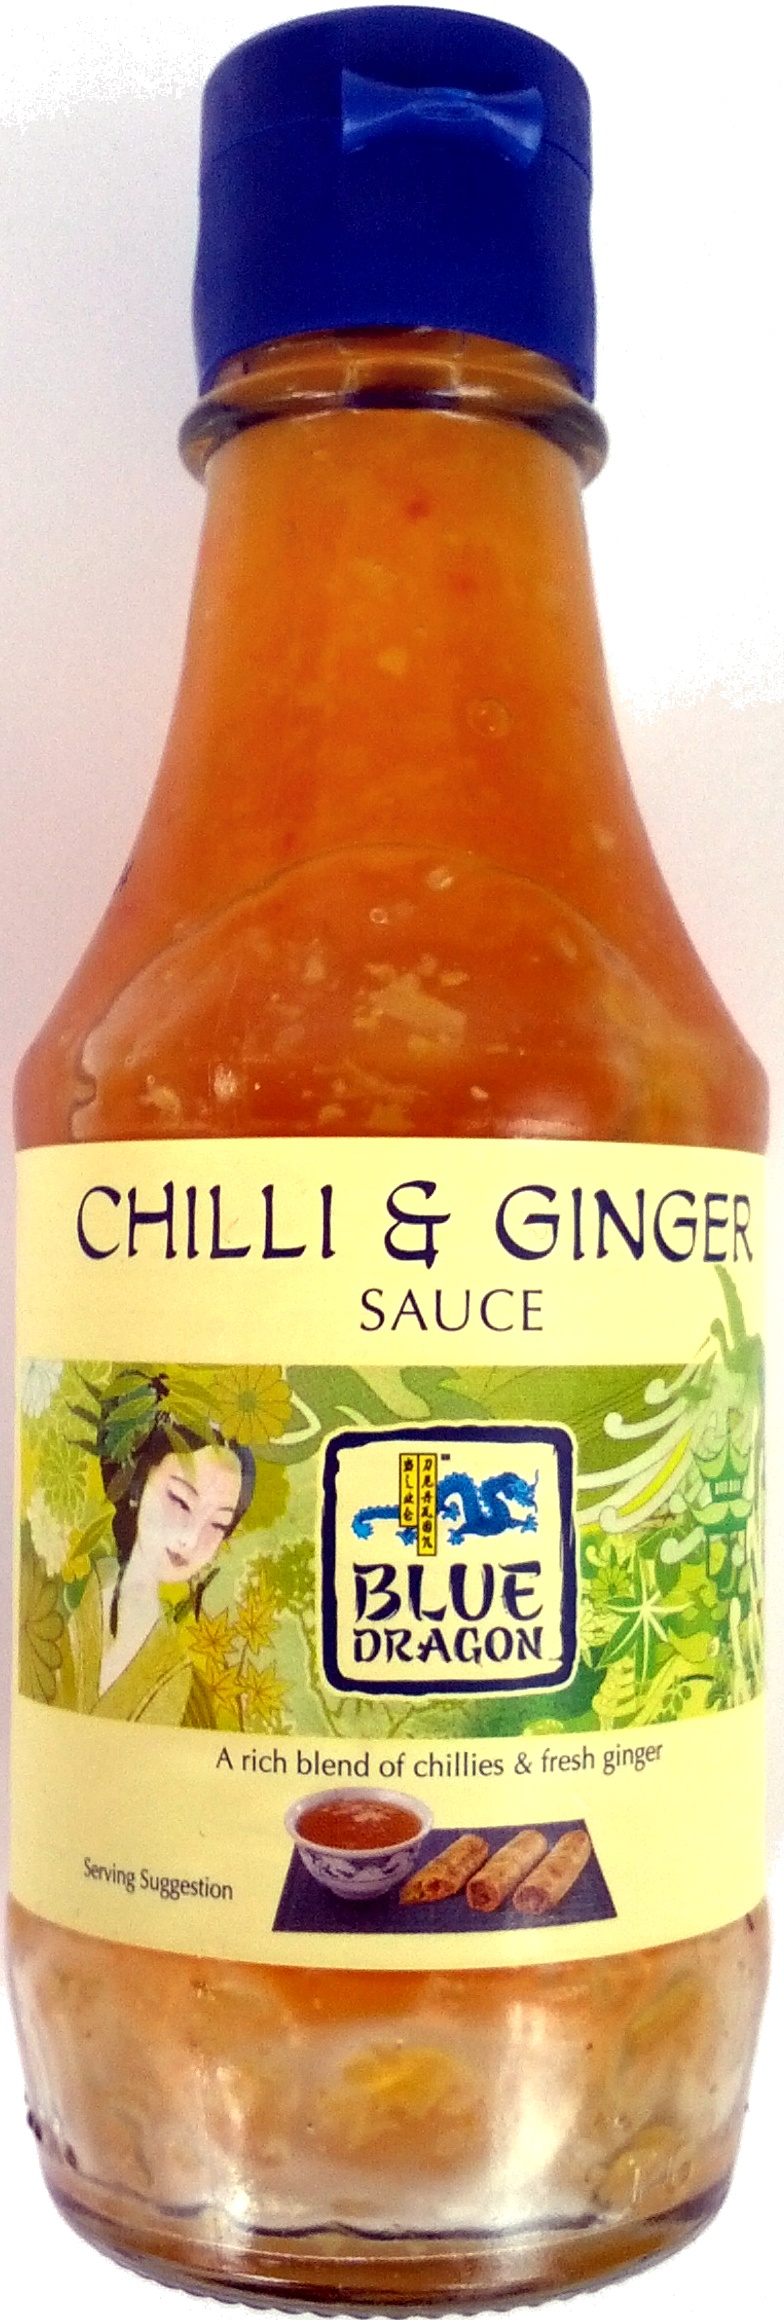 Chilli & Ginger Sauce - Produkt - en